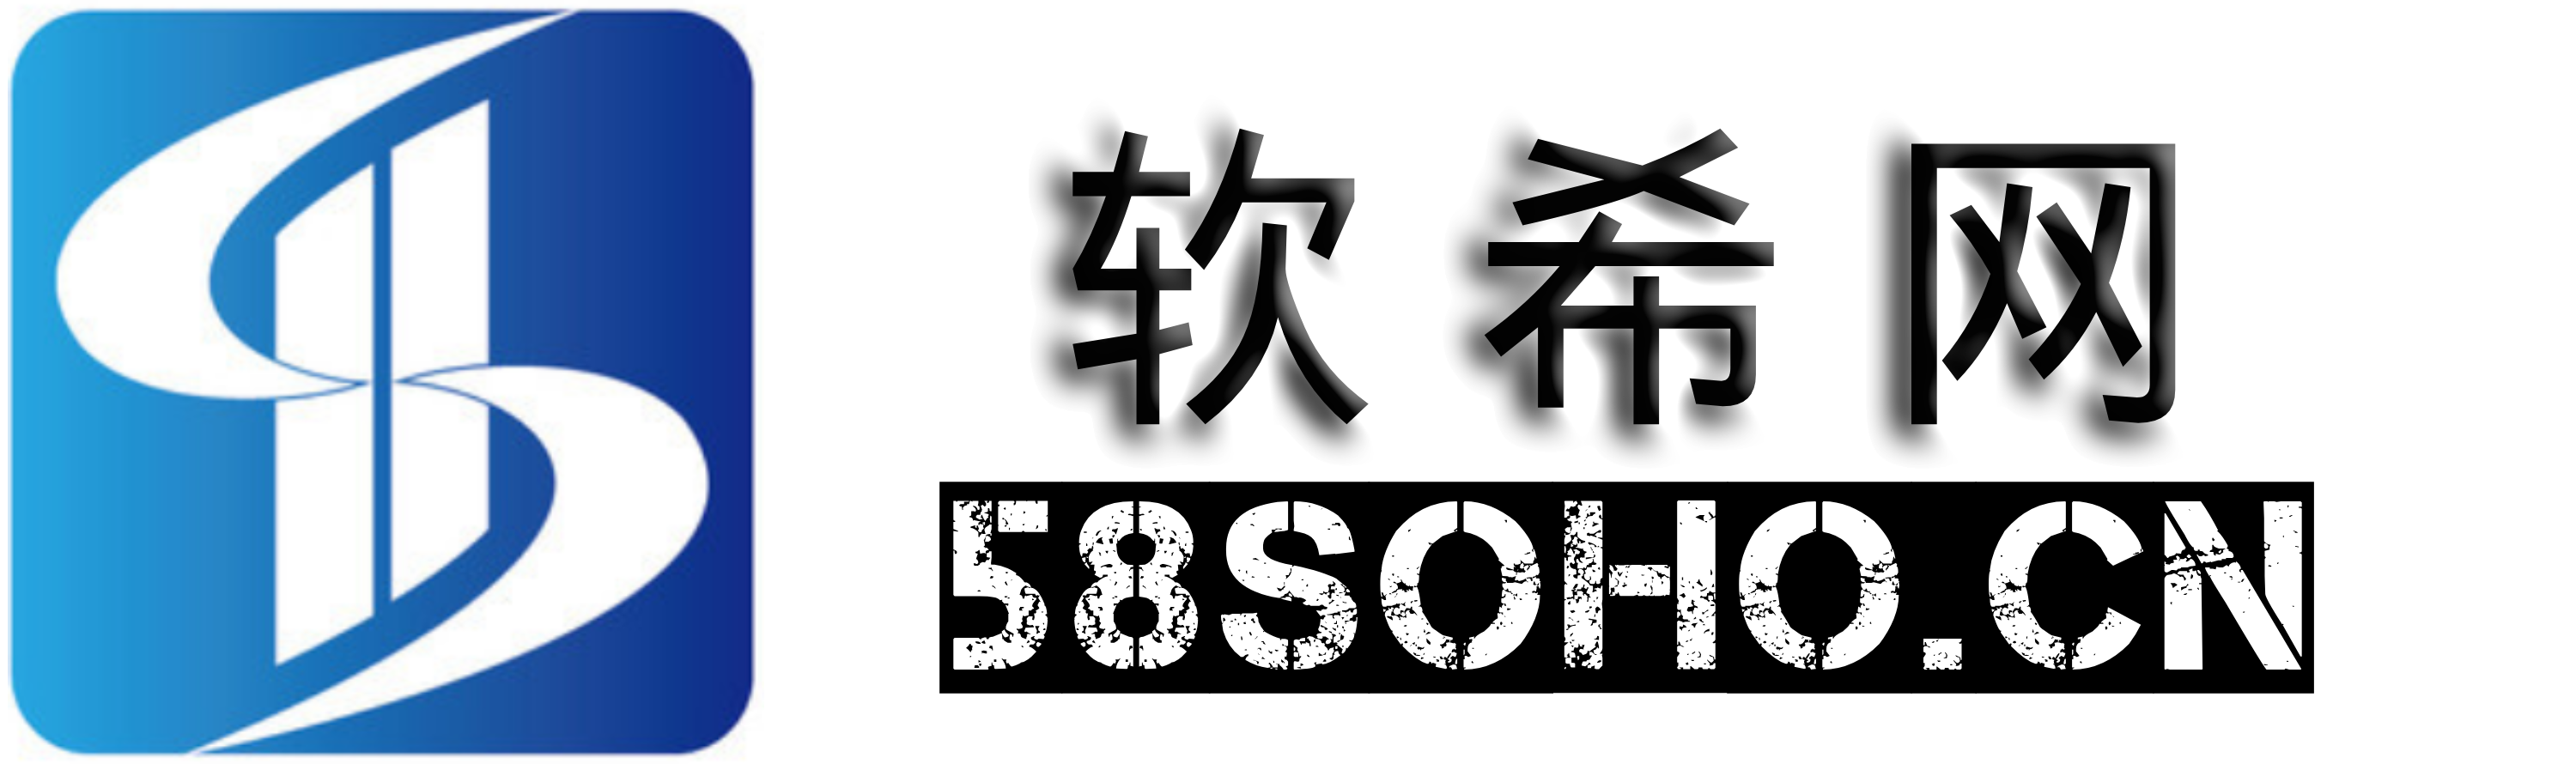 软希网58soho.cn-资源下载平台